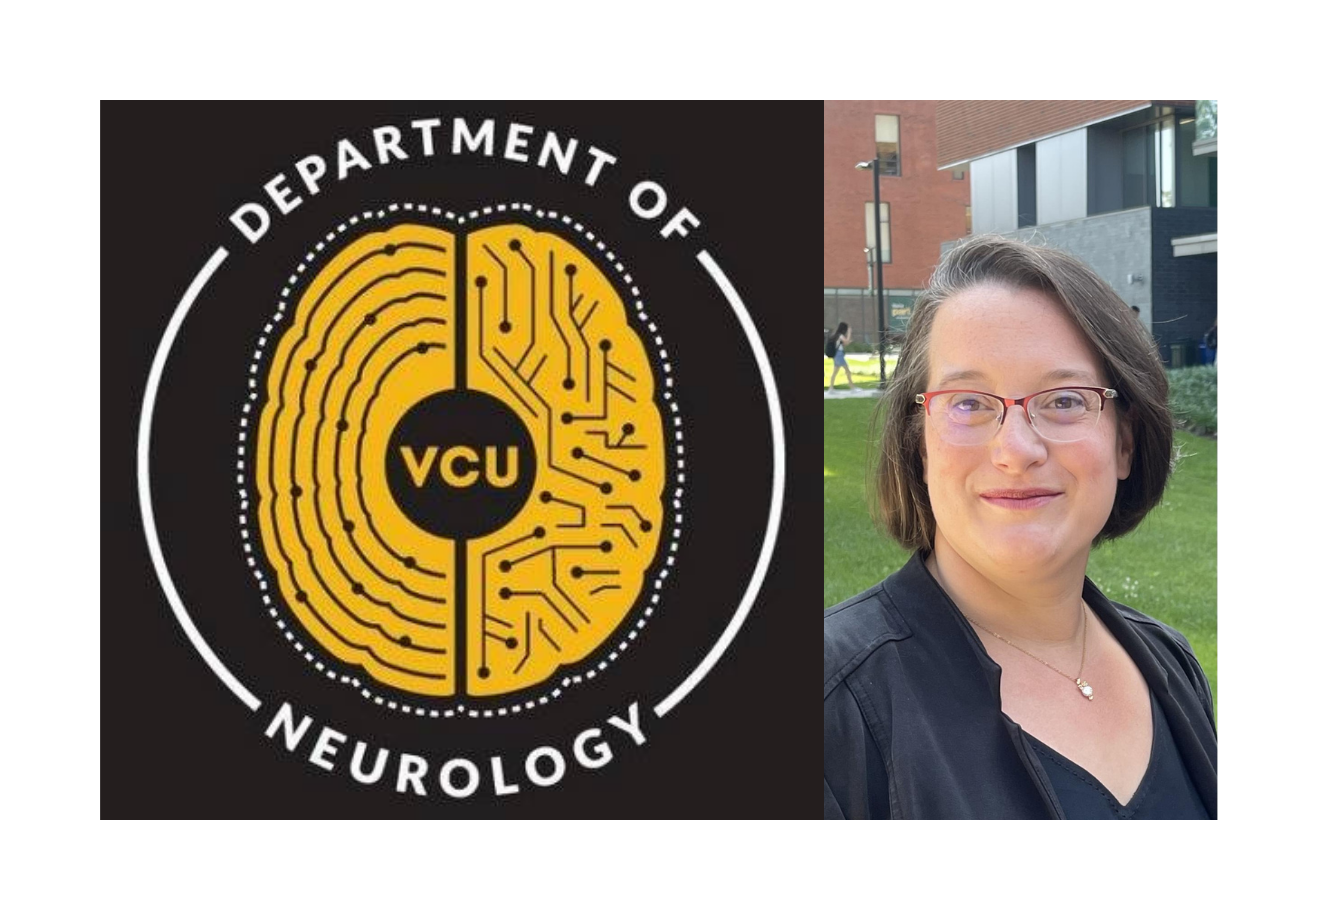 VCU’s Department of Neurology Welcomes Karen J. Sharrock, MBA